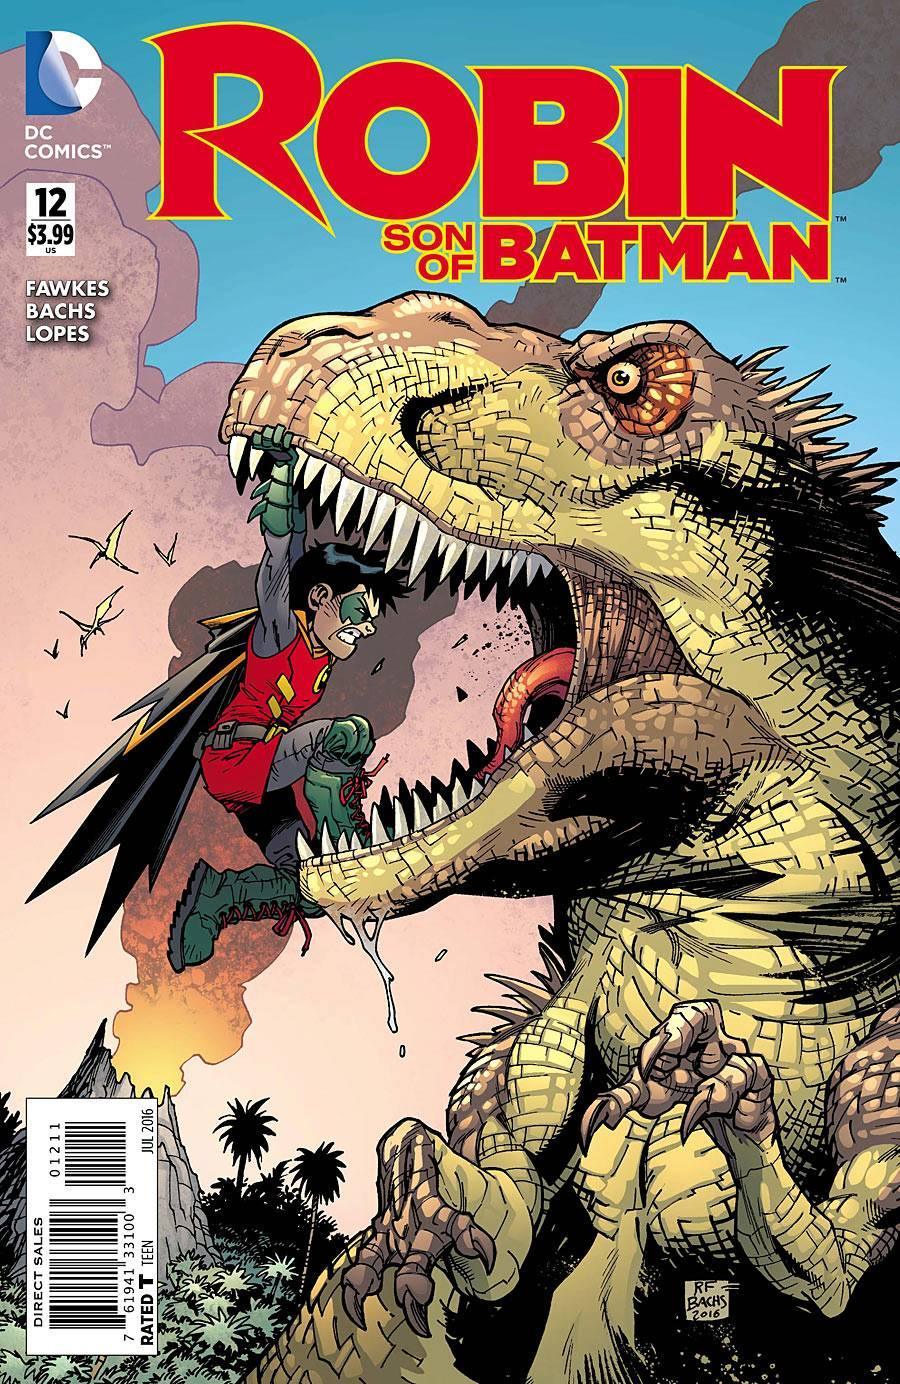 ROBIN SON OF BATMAN #12 - Kings Comics